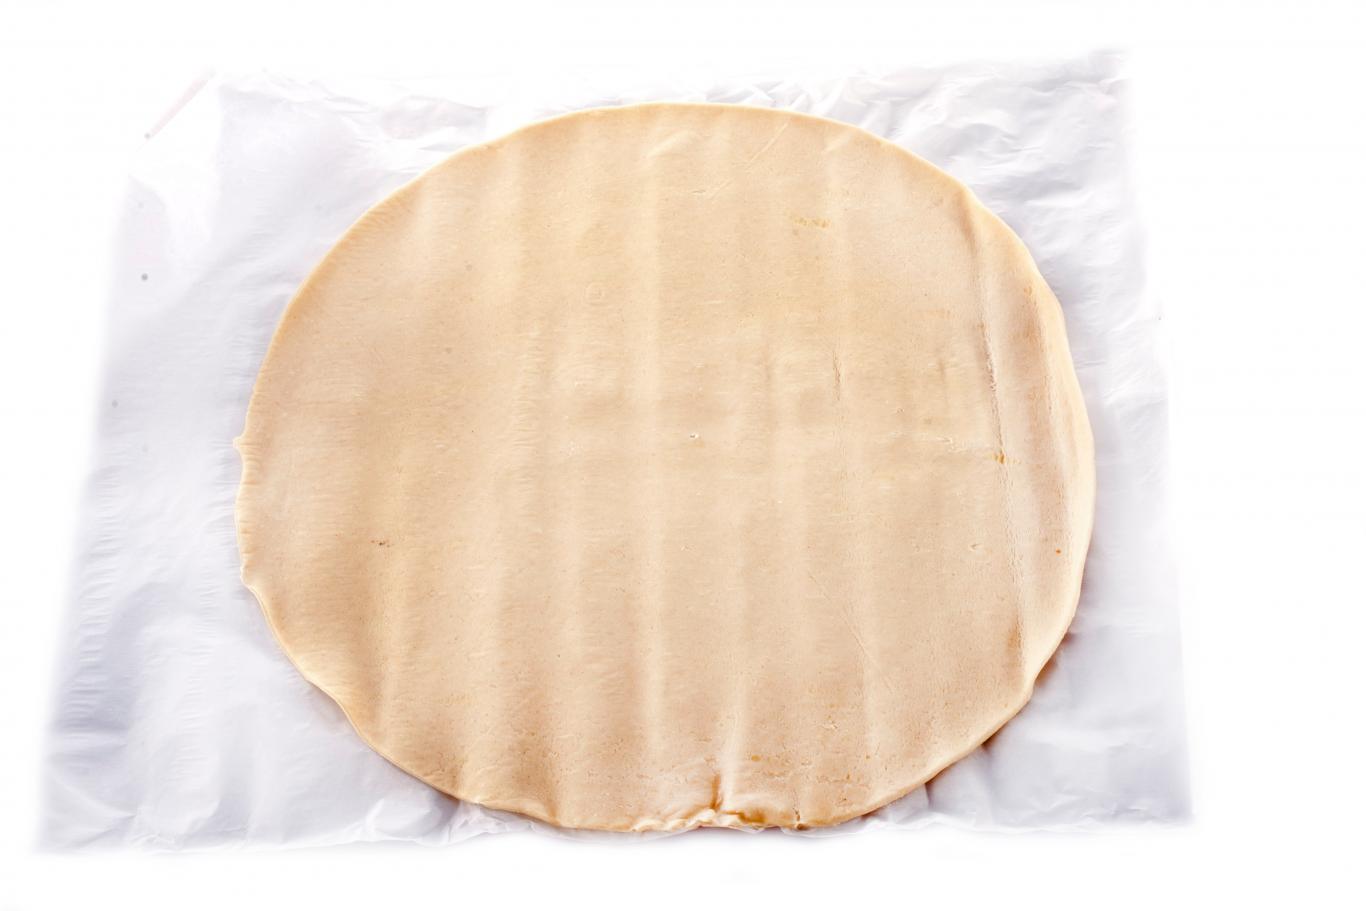 rappel produit : cette pâte feuilletée pur beurre vendue dans la france entière est contaminée par e. coli